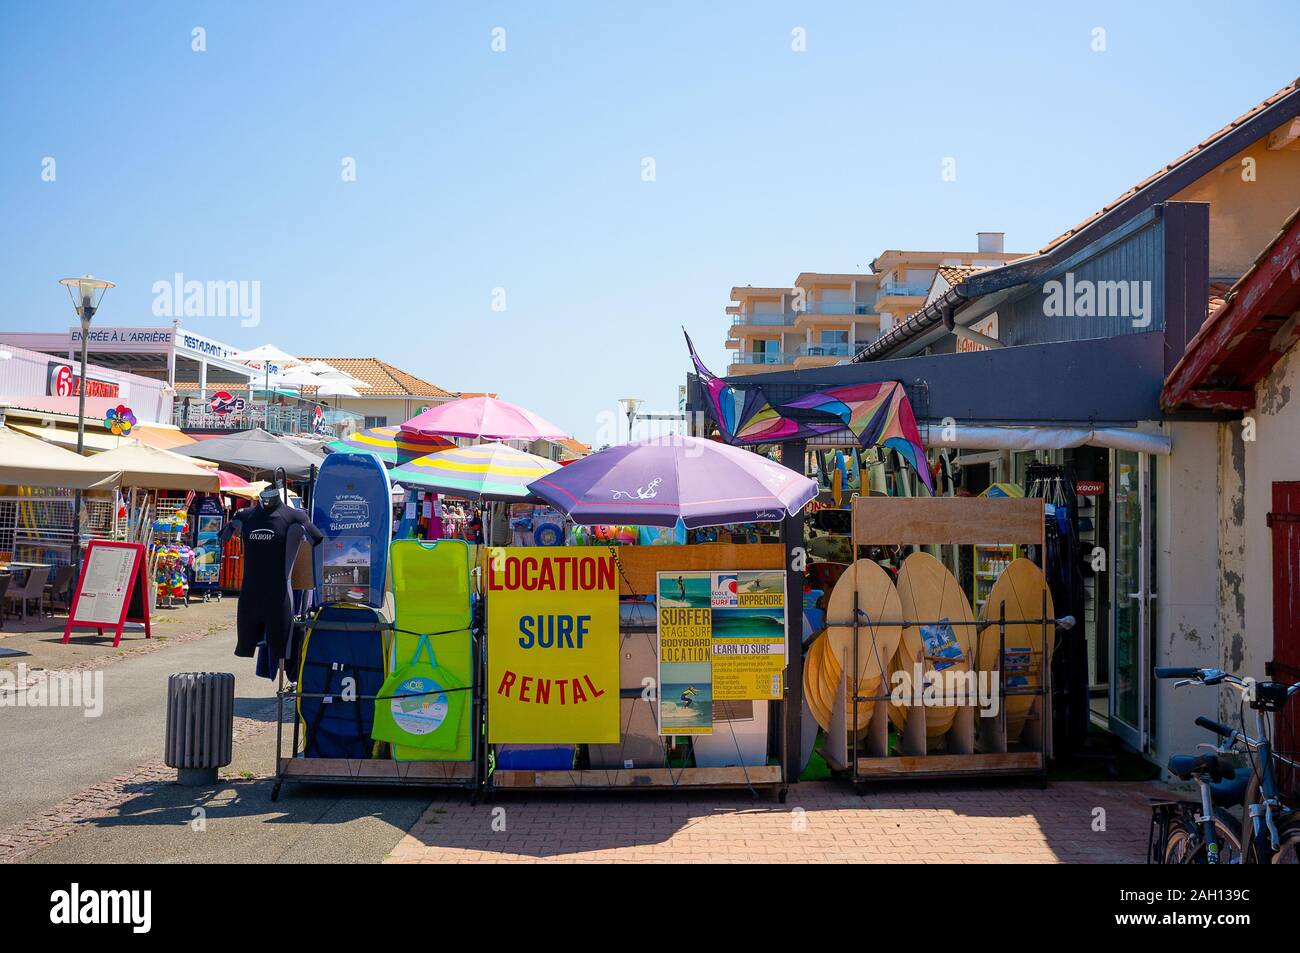 Farbige Werbung für die Vermietung von Surfbrettern in einer Straße in der Sonne Stockfoto